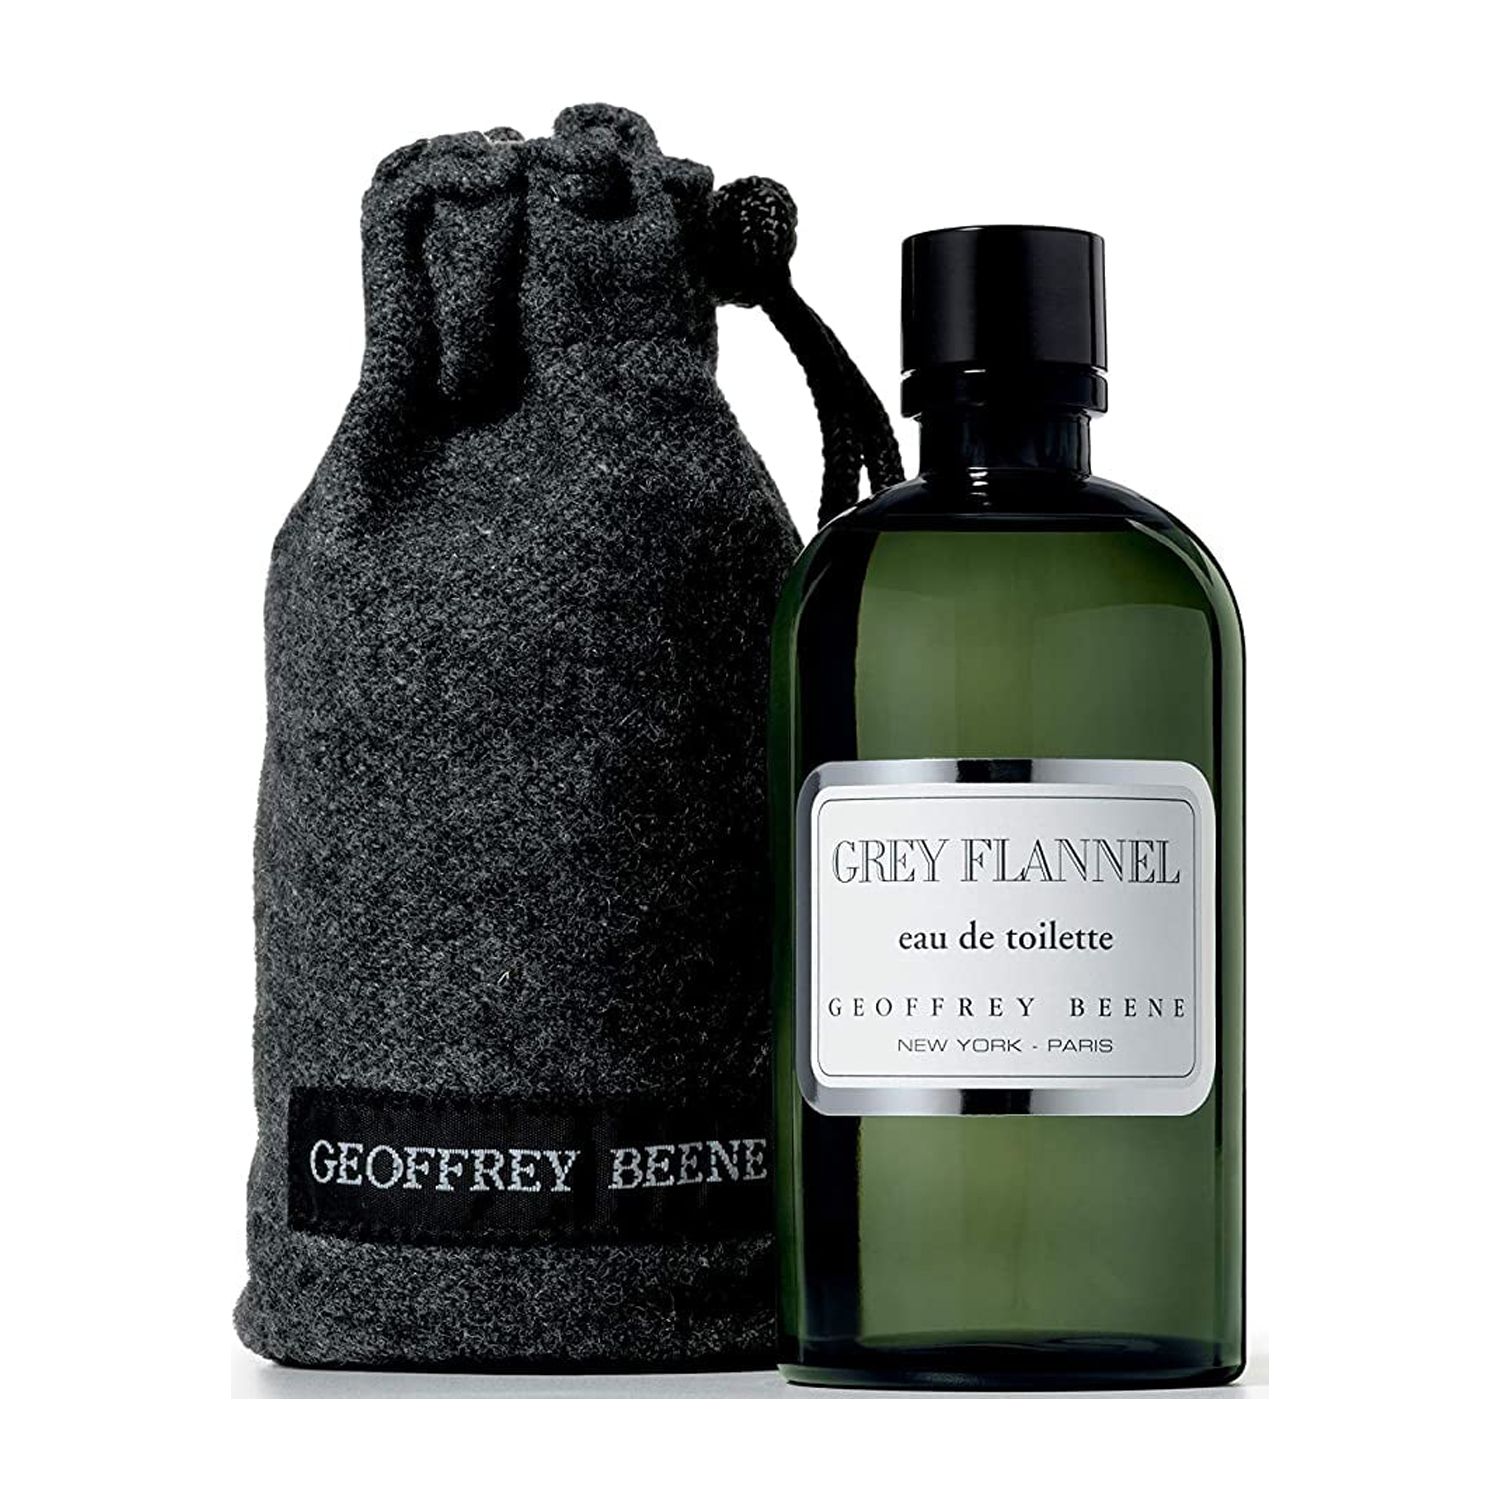 Geoffrey Beene Grey Flannel Eau de Toilette Spray, 4 Oz - Walmart.com